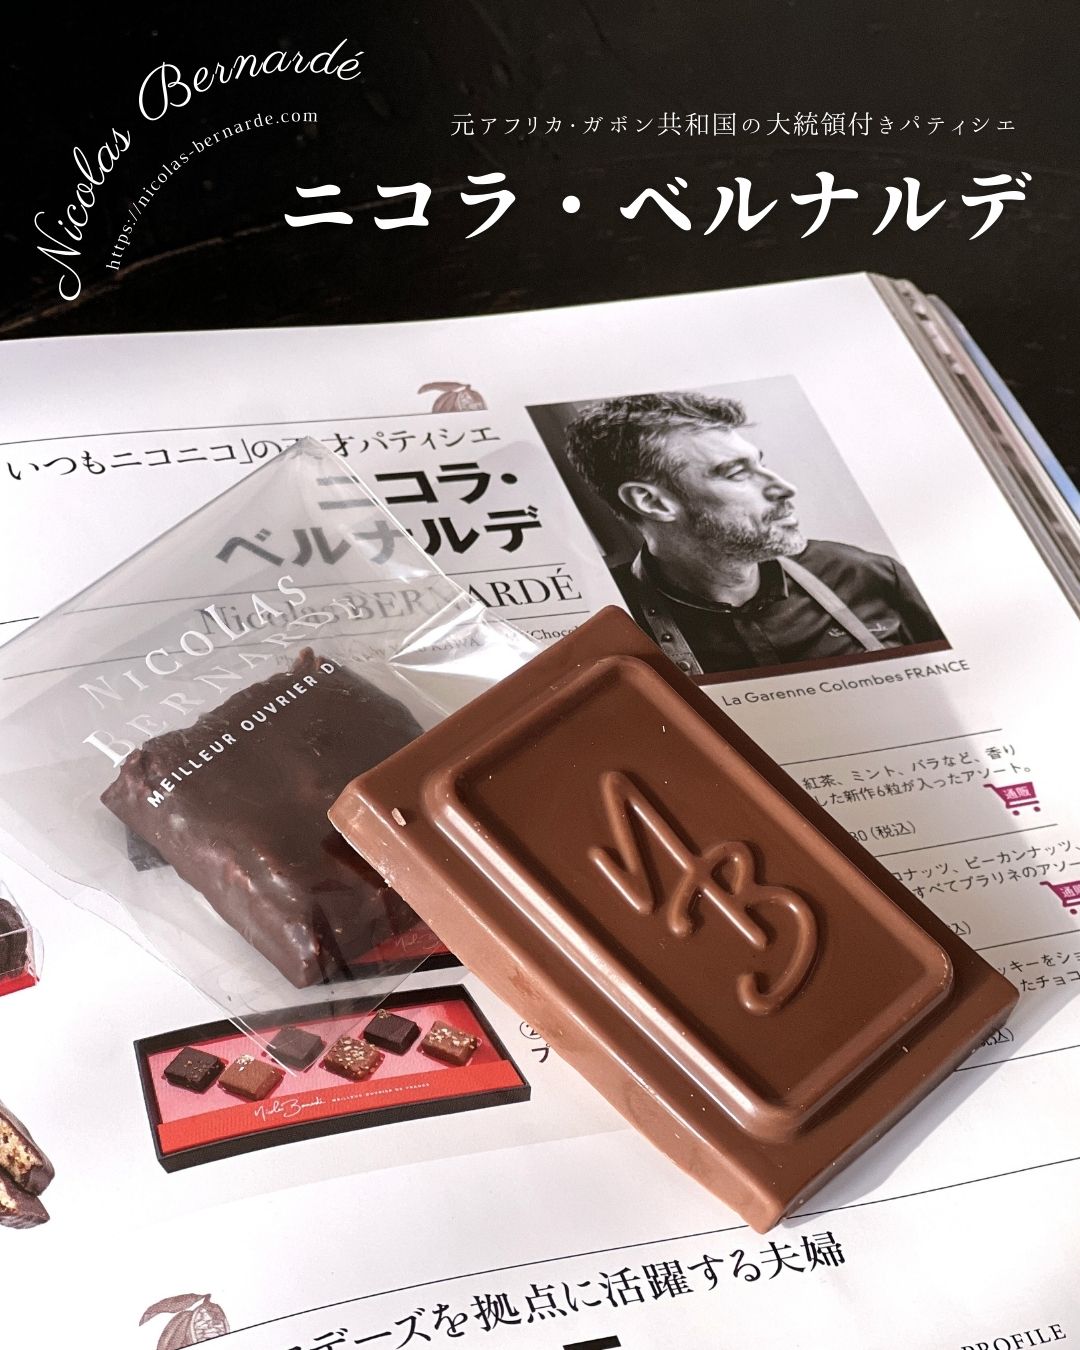 元大統領付きパティシエ「ニコラ・ベルナルデ」が作るチョコレートとは